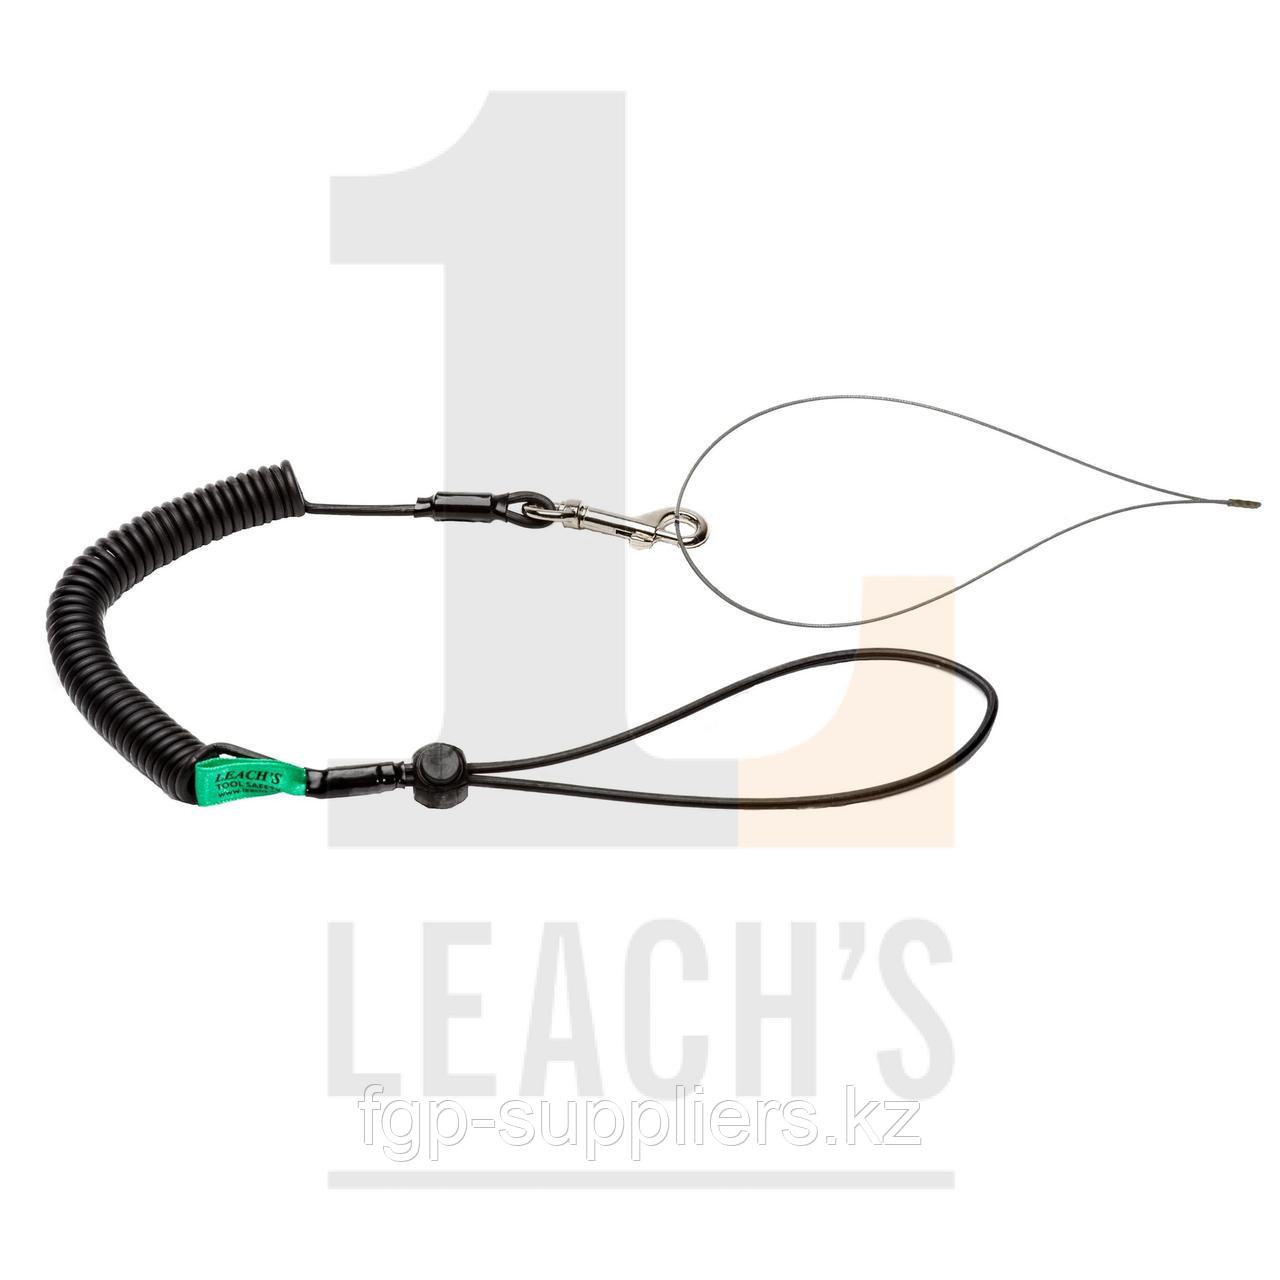 Tool Safety Rope and wire rope belt or wrist option / Шнур держатель инструментов, с опциями проволочный ремешок или ручной